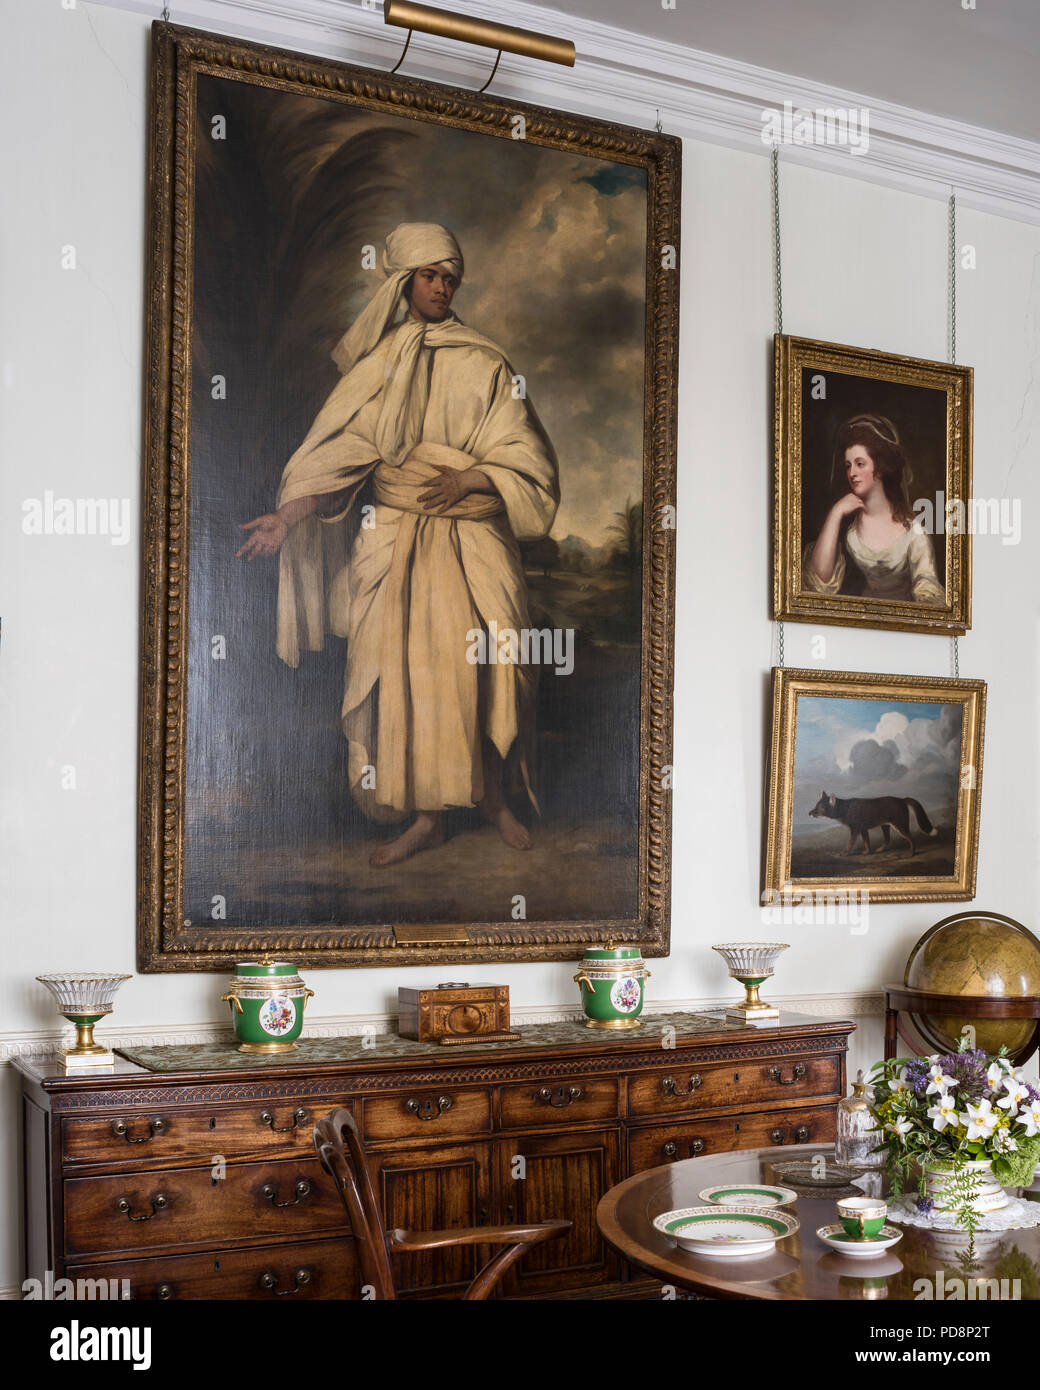 Large gilt framed artwork above sideboard Stock Photo